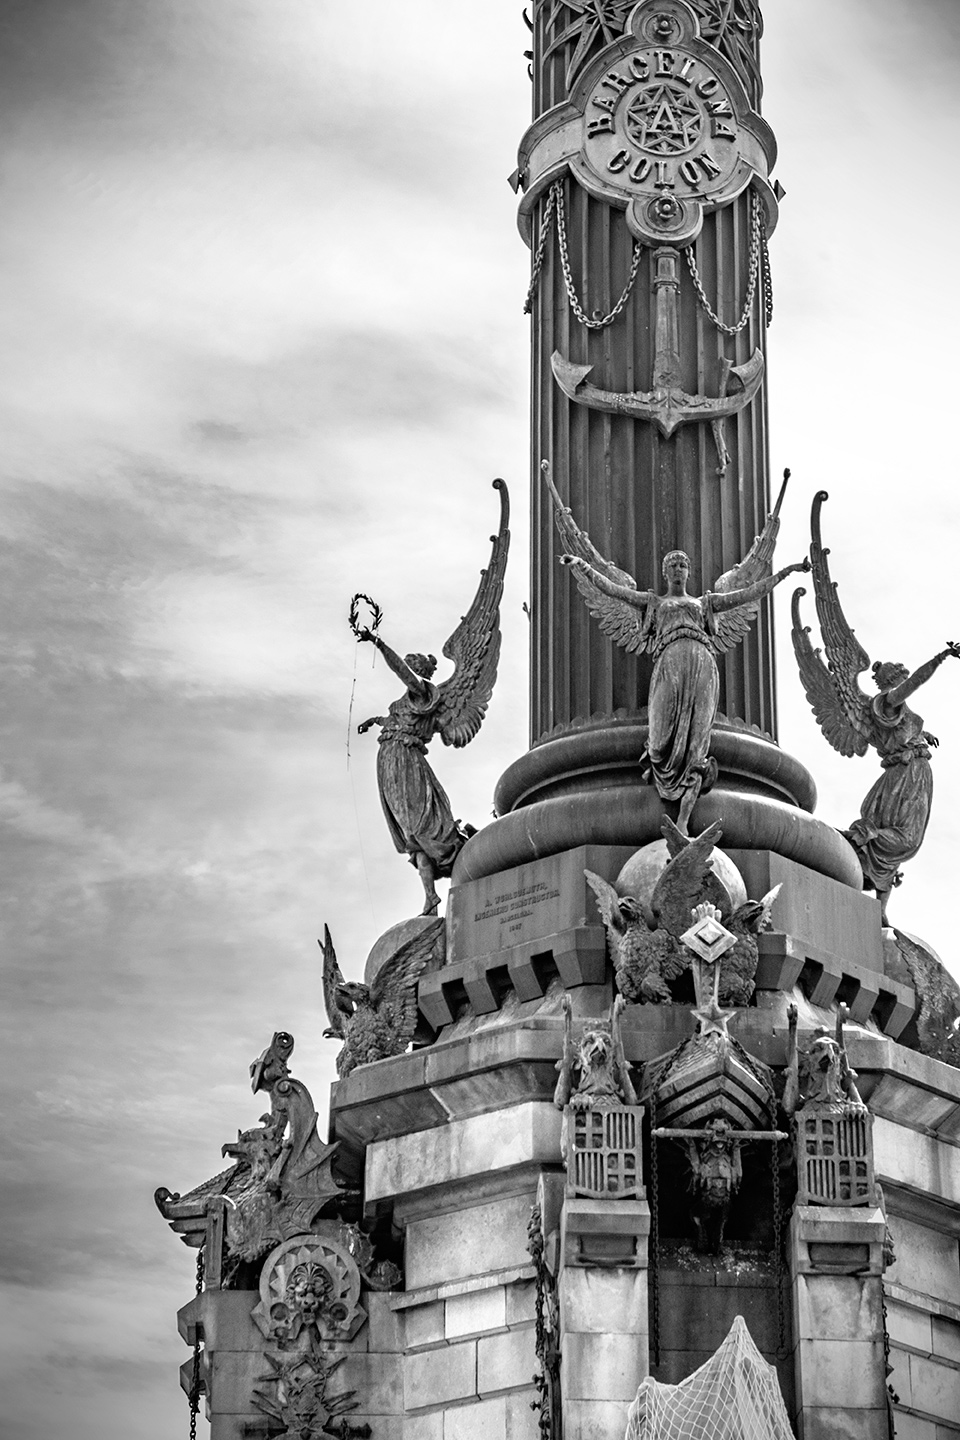 Black and white photography of the Columbus Monument colomat Placa Portal de la Pau, Barcelona, Catalonia, Spain, (Nos Dren).